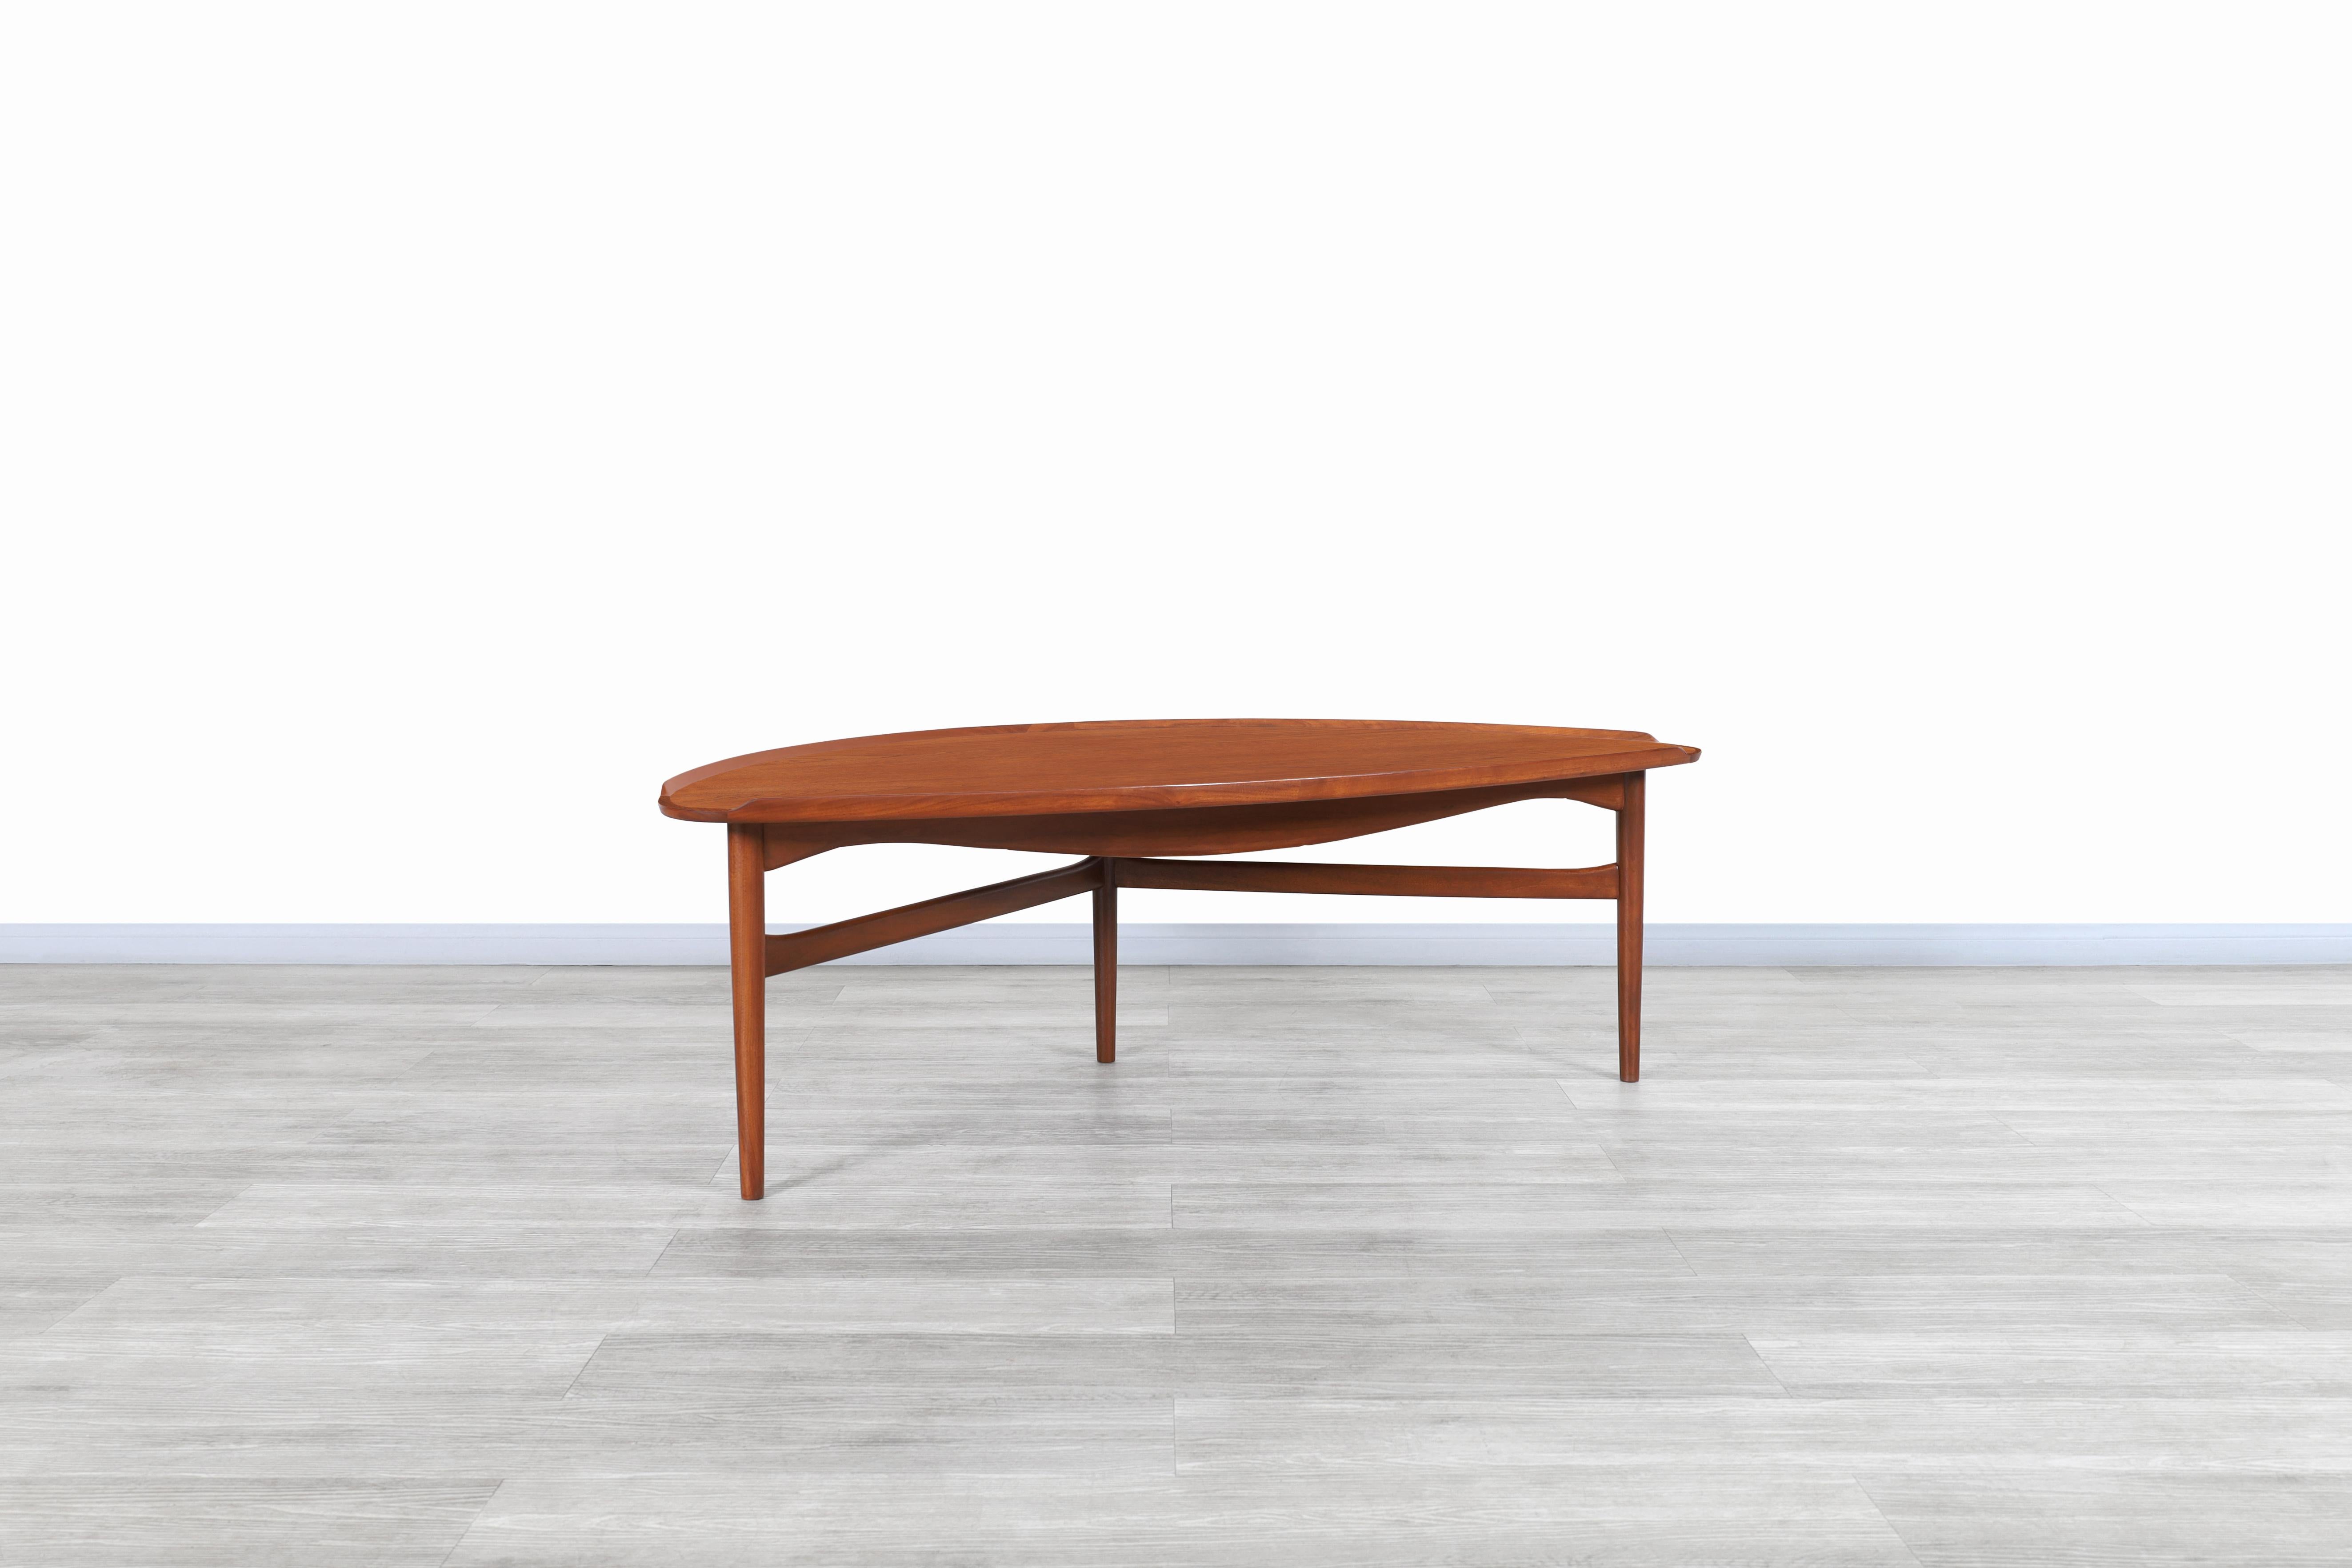 Exceptionnelle table de cocktail en teck de style moderne danois, conçue par le designer emblématique Finn Juhl pour Baker Furniture aux États-Unis, vers les années 1950. Cette table de cocktail présente un design sculptural sans angles vifs qui